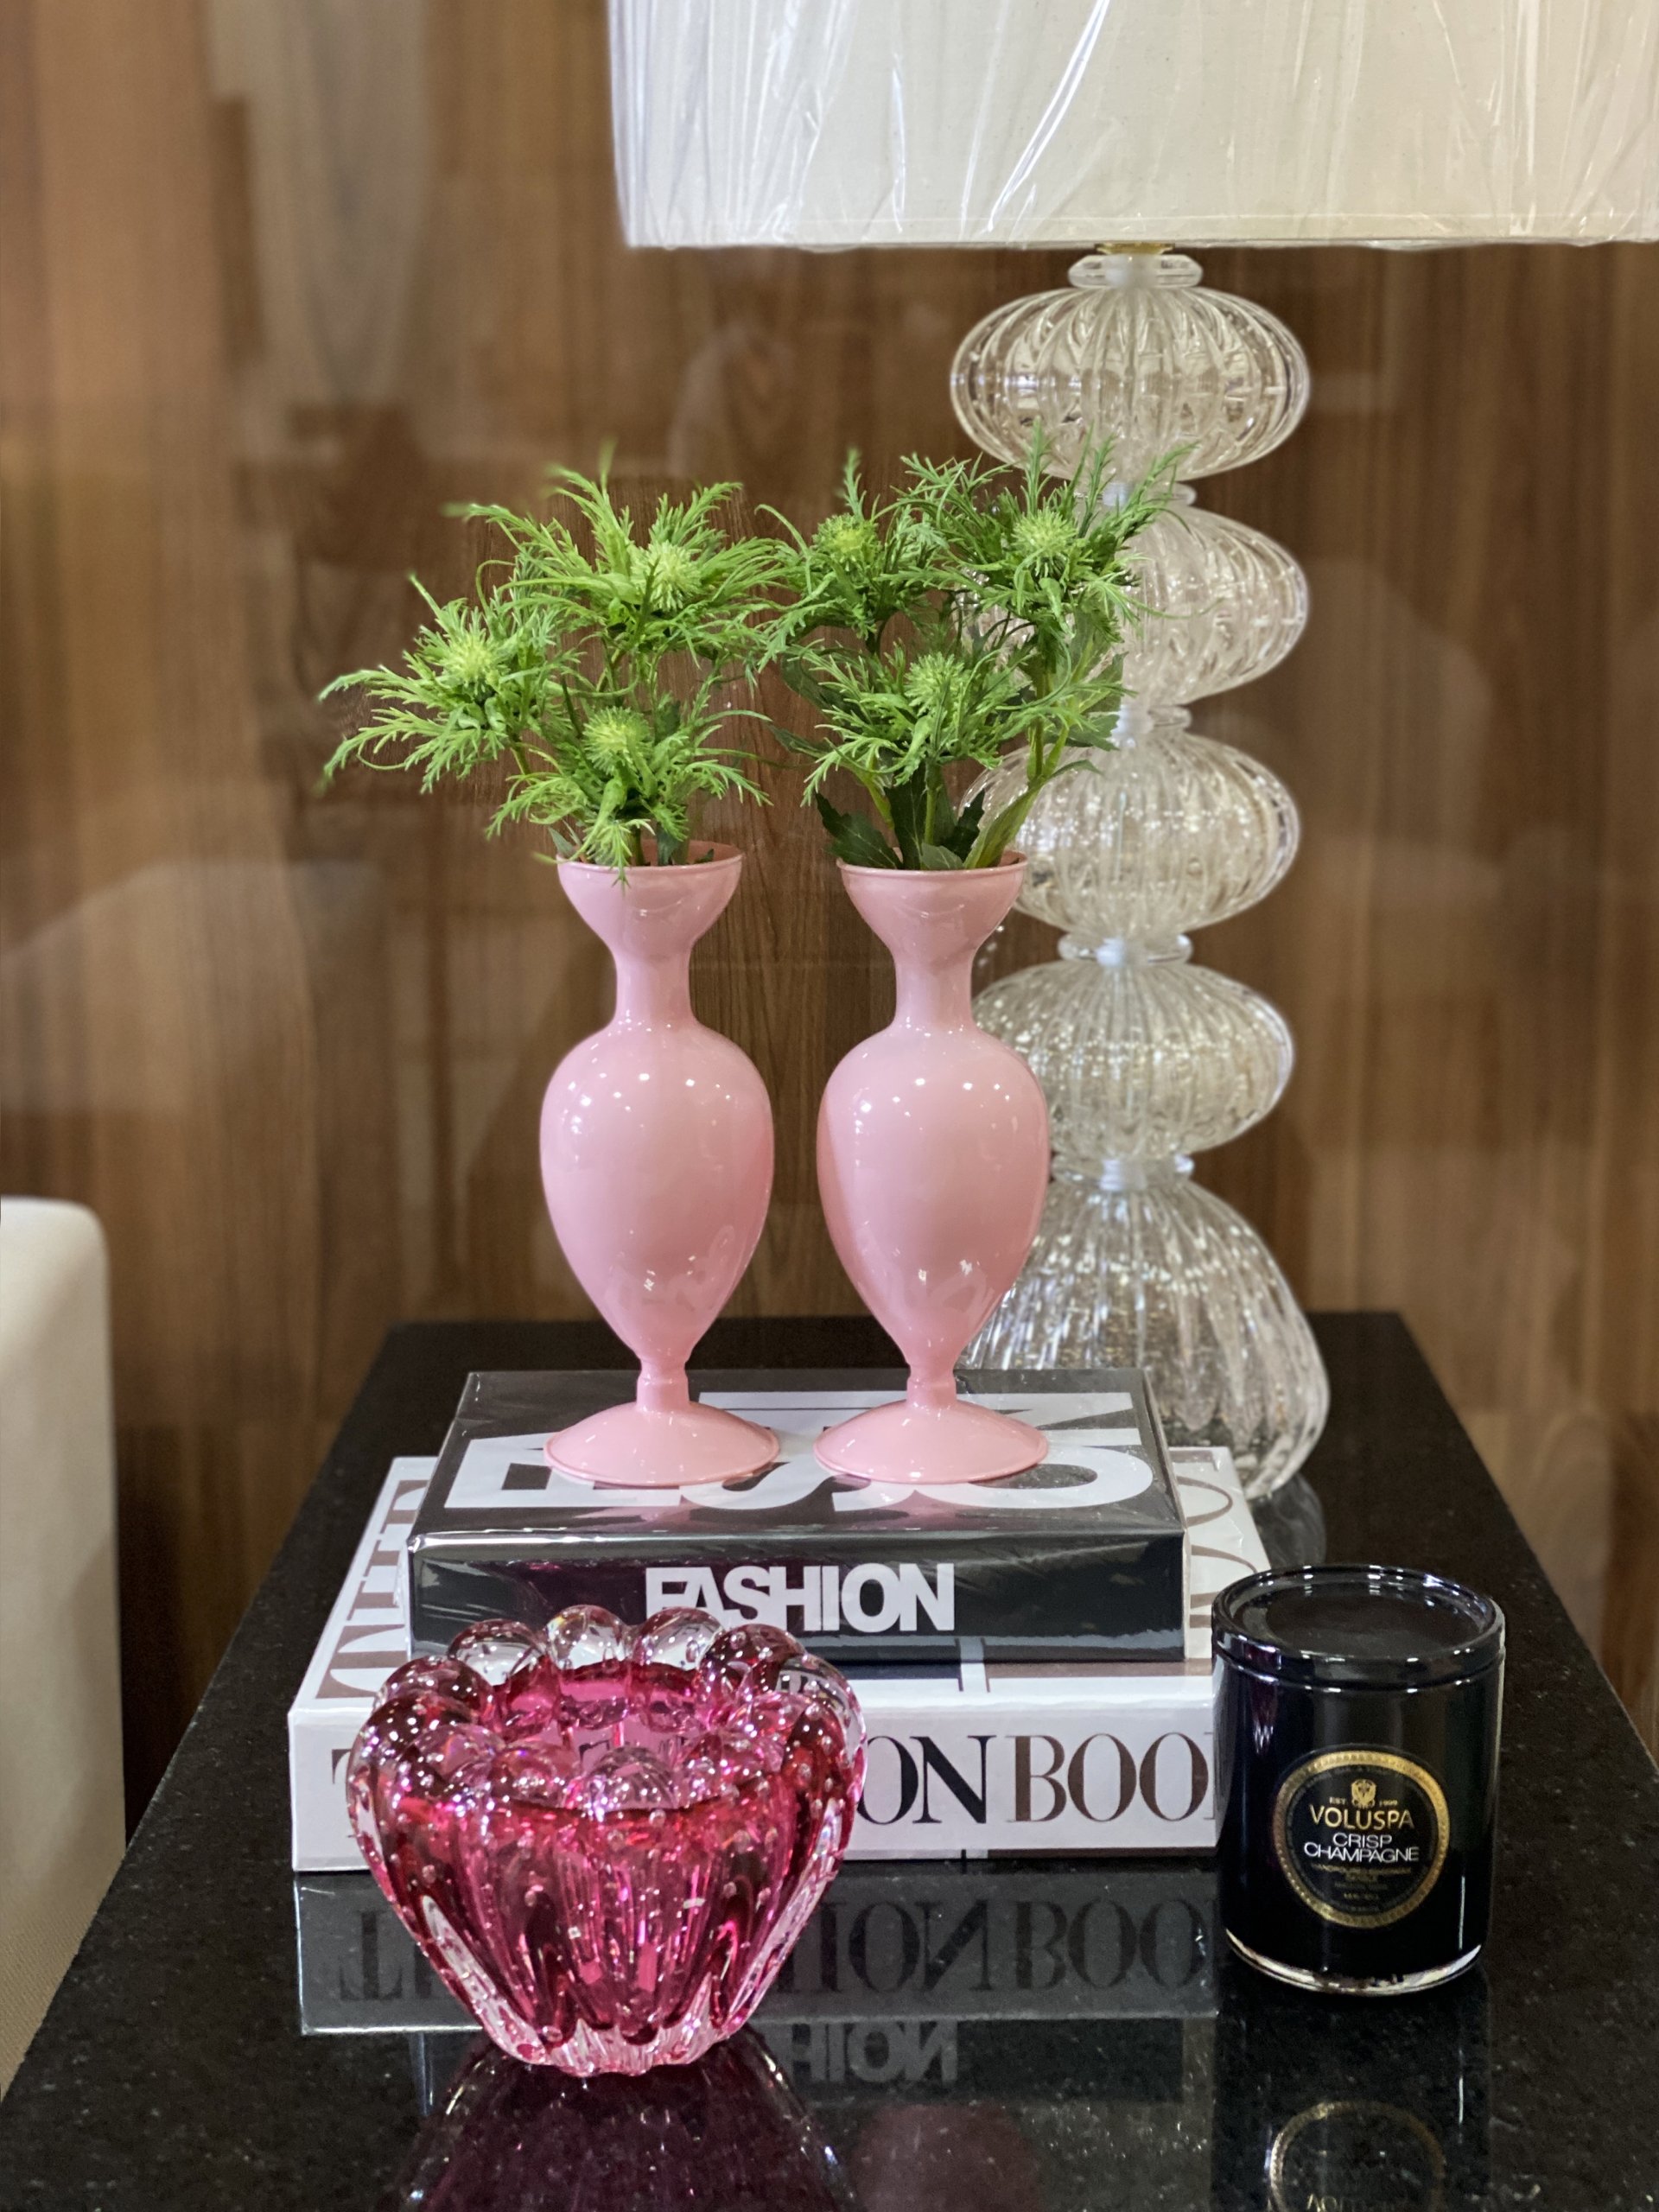 Vaso vidro opalinado rosa claro